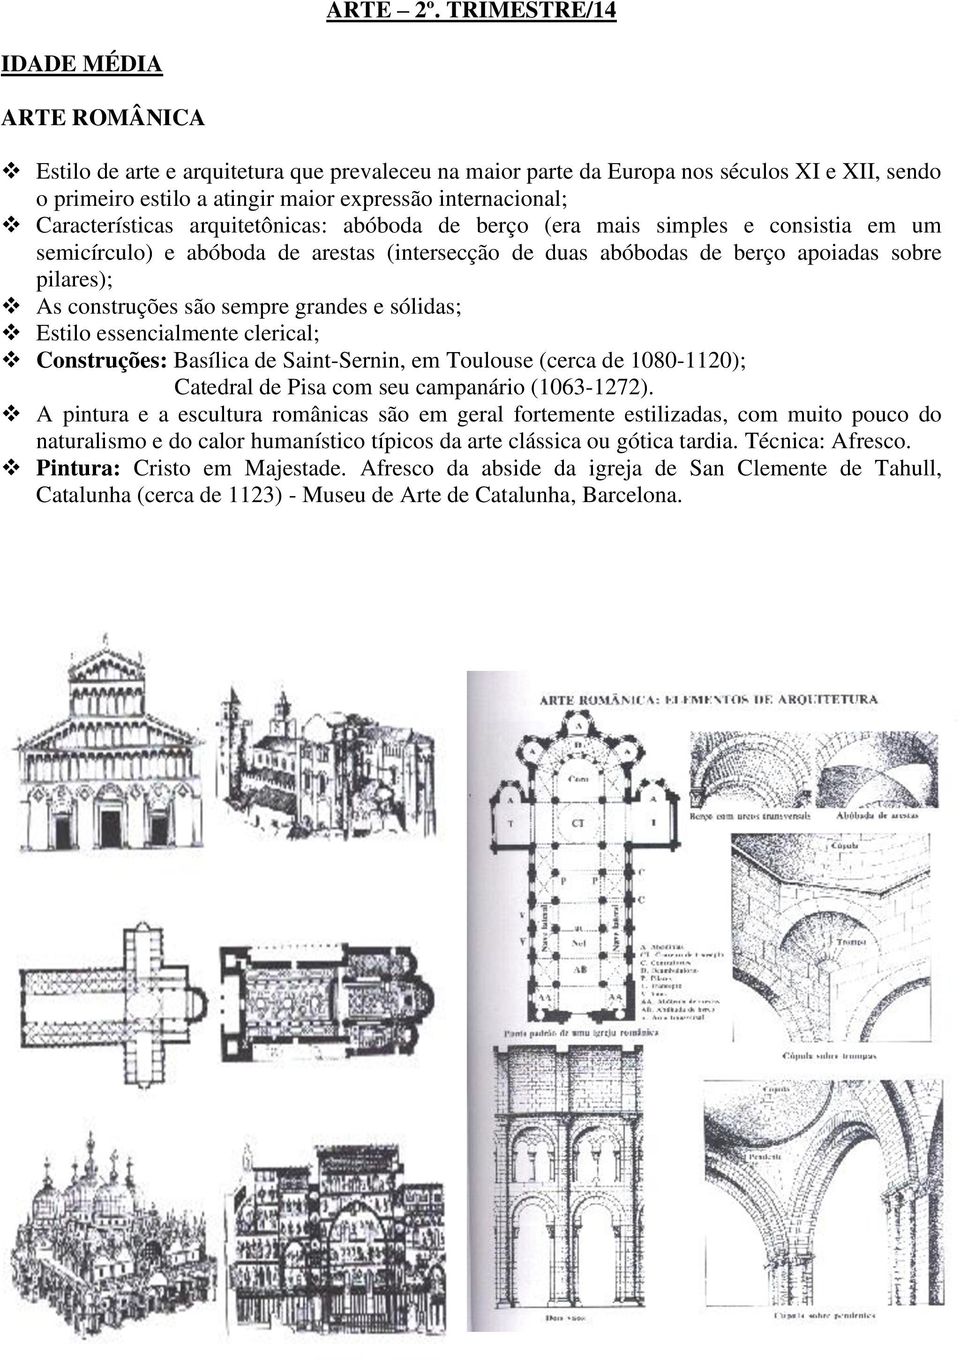 Características arquitetônicas: abóboda de berço (era mais simples e consistia em um semicírculo) e abóboda de arestas (intersecção de duas abóbodas de berço apoiadas sobre pilares); As construções